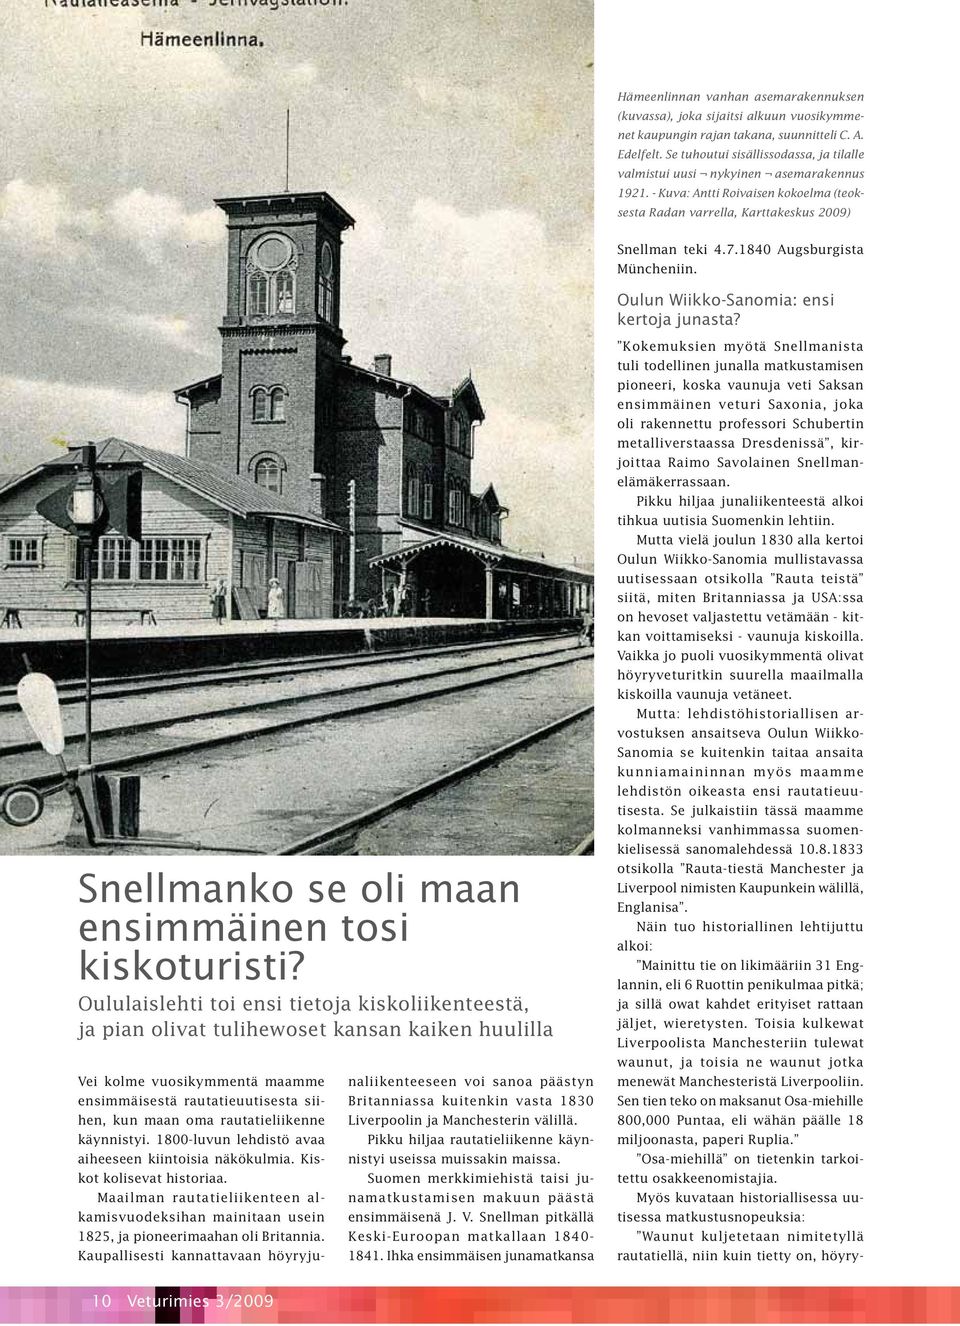 1840 Augsburgista Müncheniin. Oulun Wiikko-Sanomia: ensi kertoja junasta? Snellmanko se oli maan ensimmäinen tosi kiskoturisti?